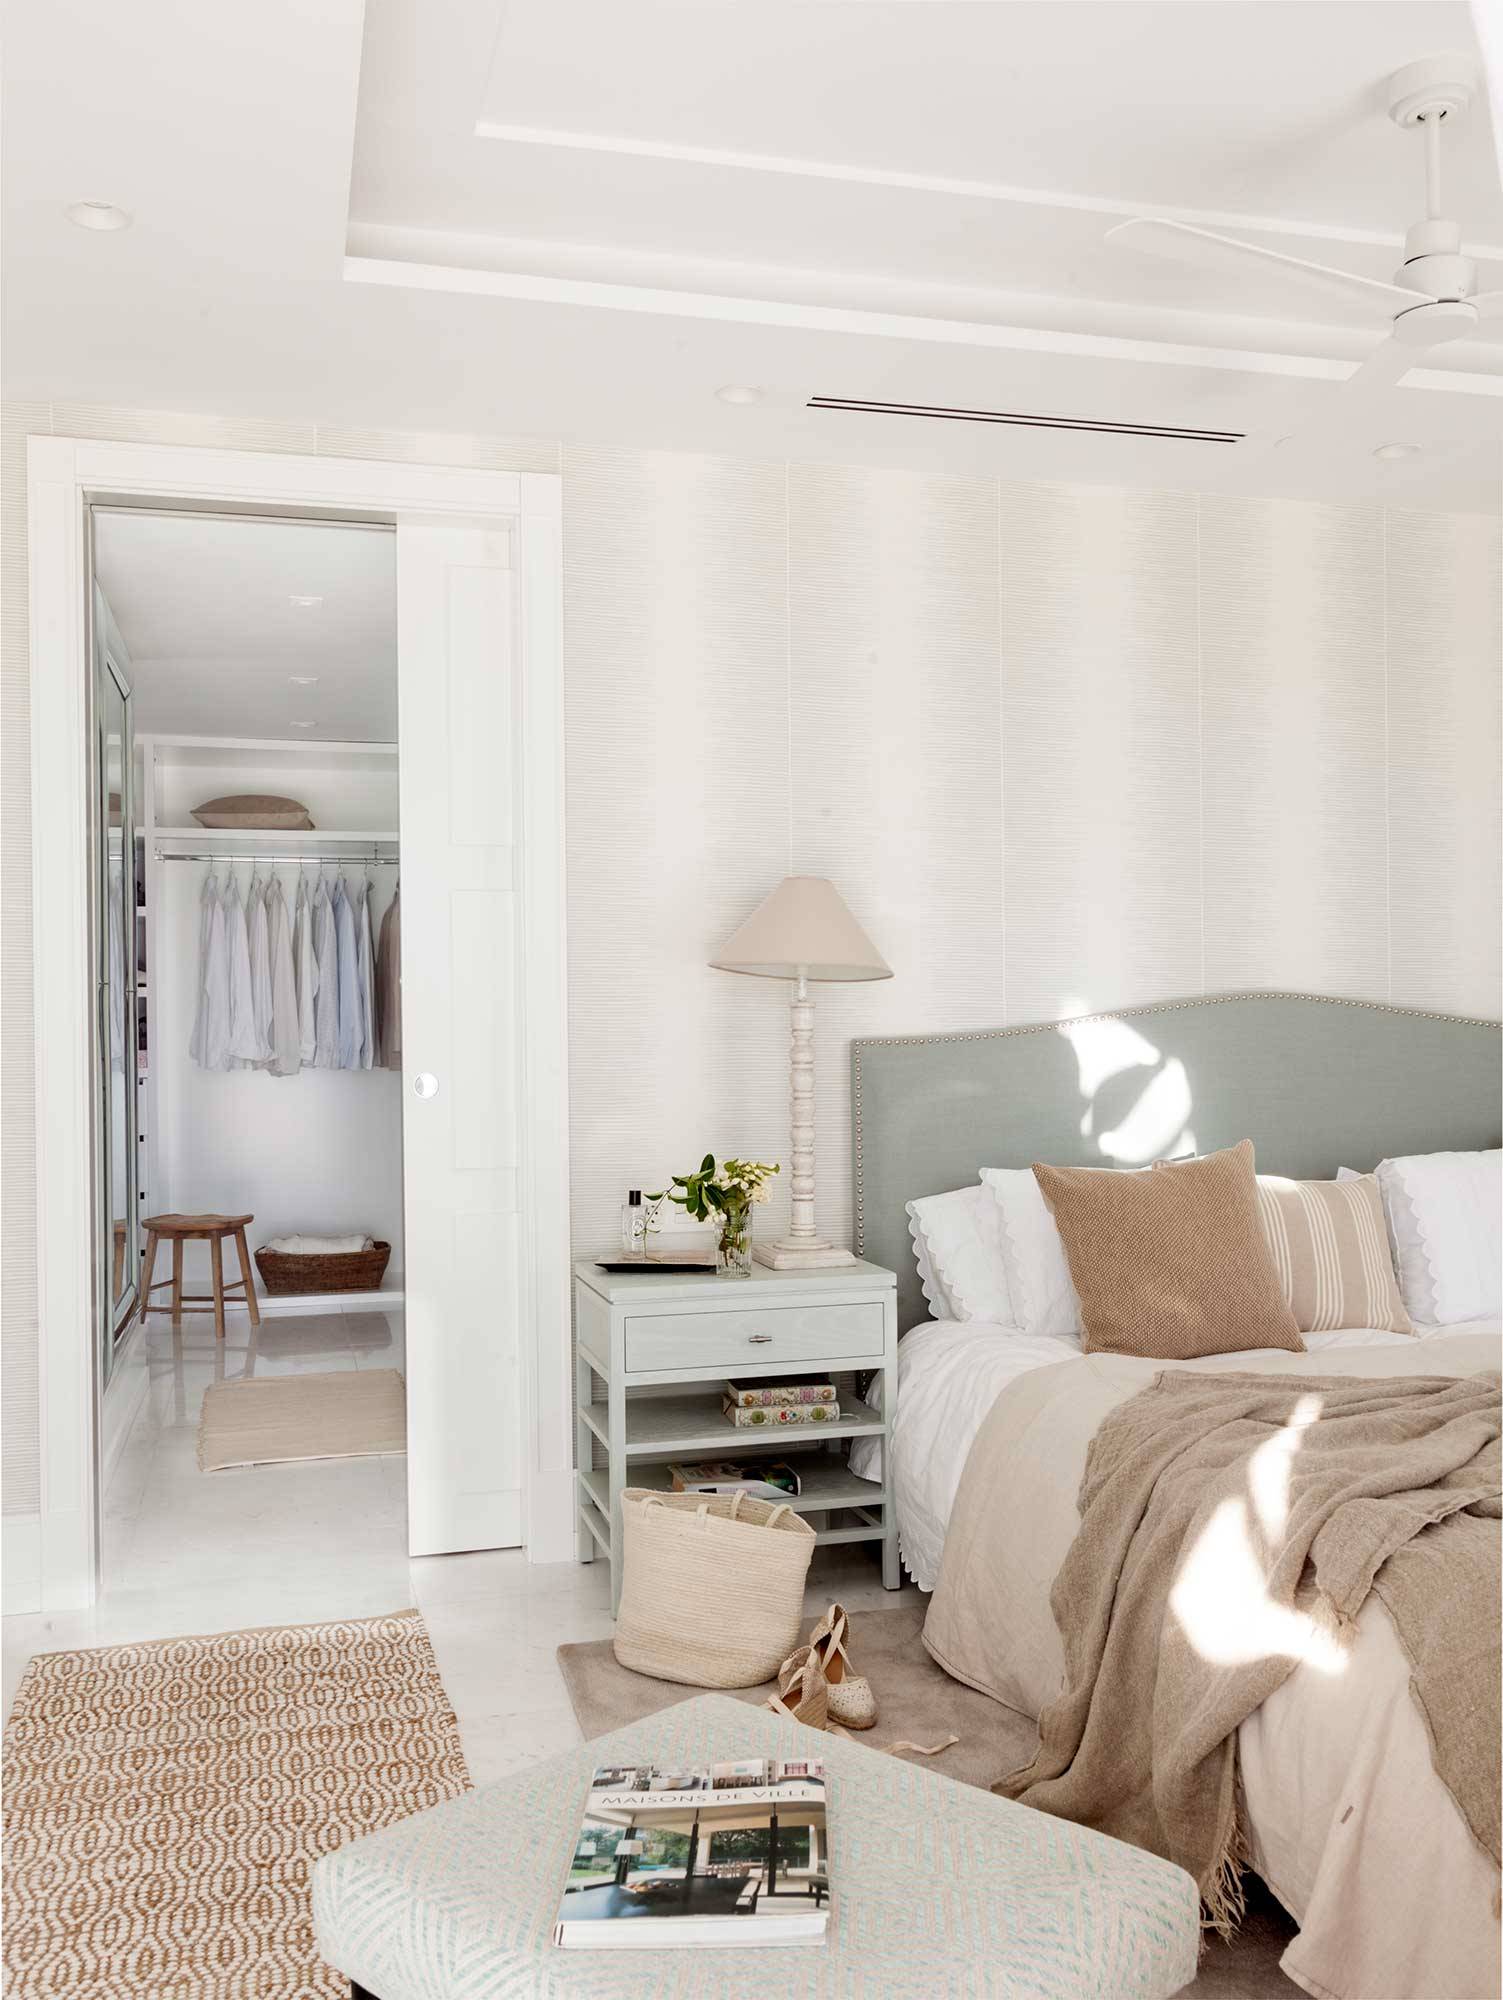 Dormitorio con pared del cabecero con papel a rayas y corredera que separa el vestidor.